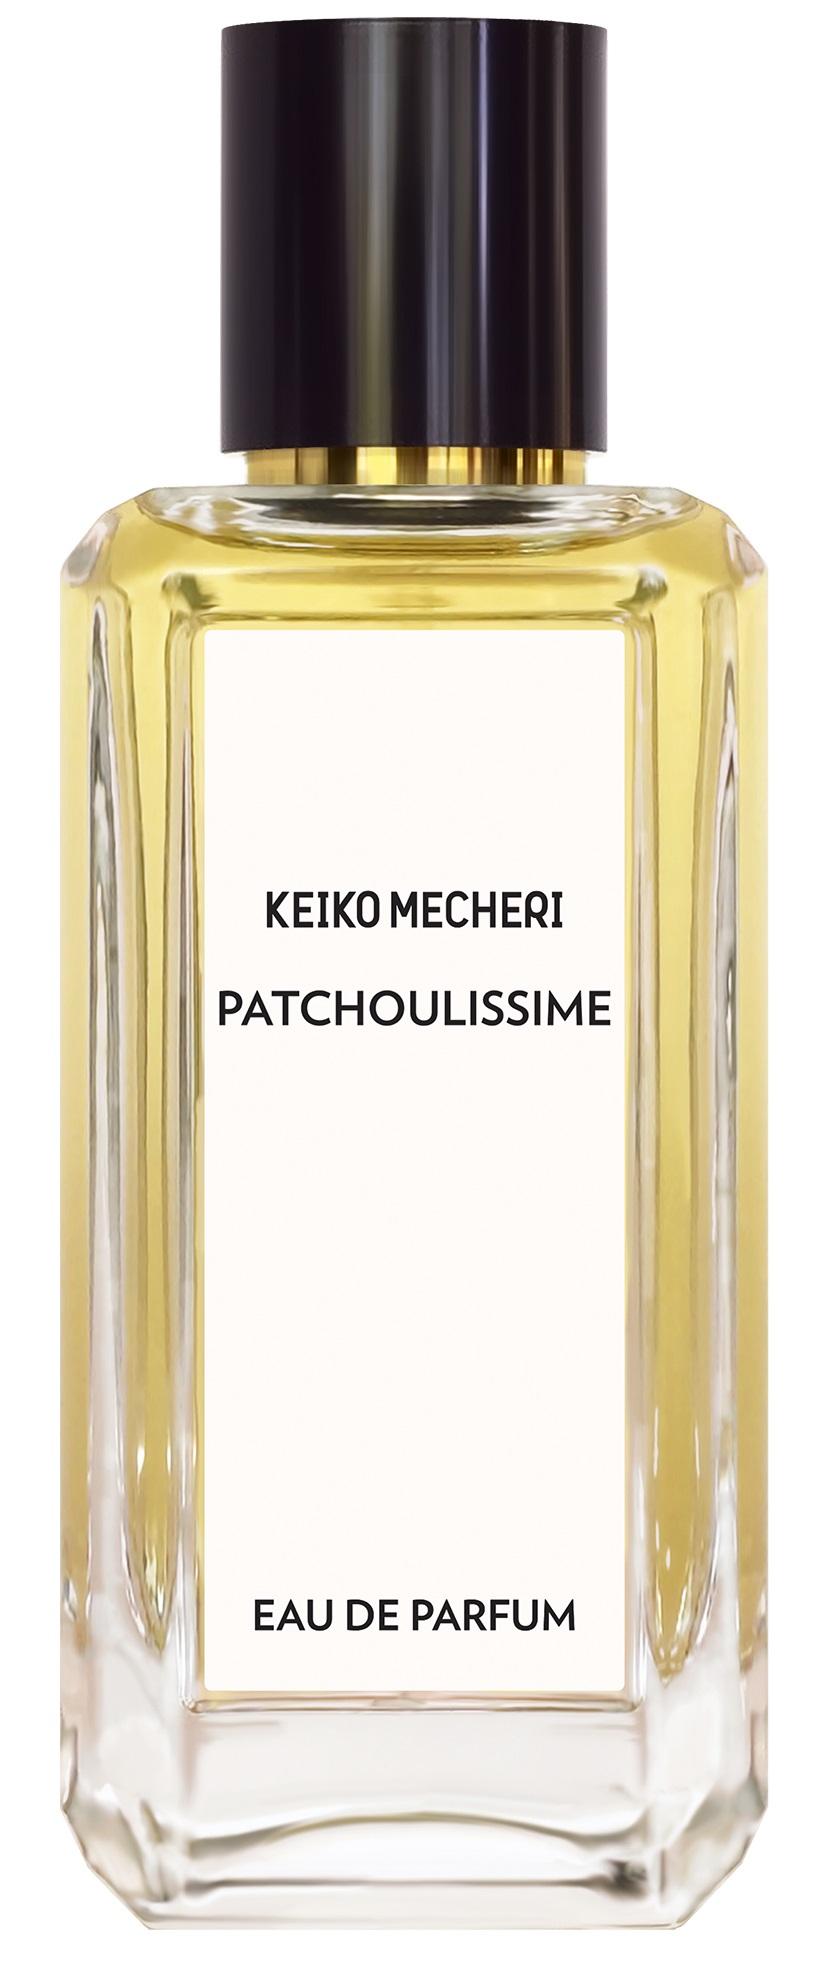 Keiko Mecheri Patchoulissime edp 100 ml.